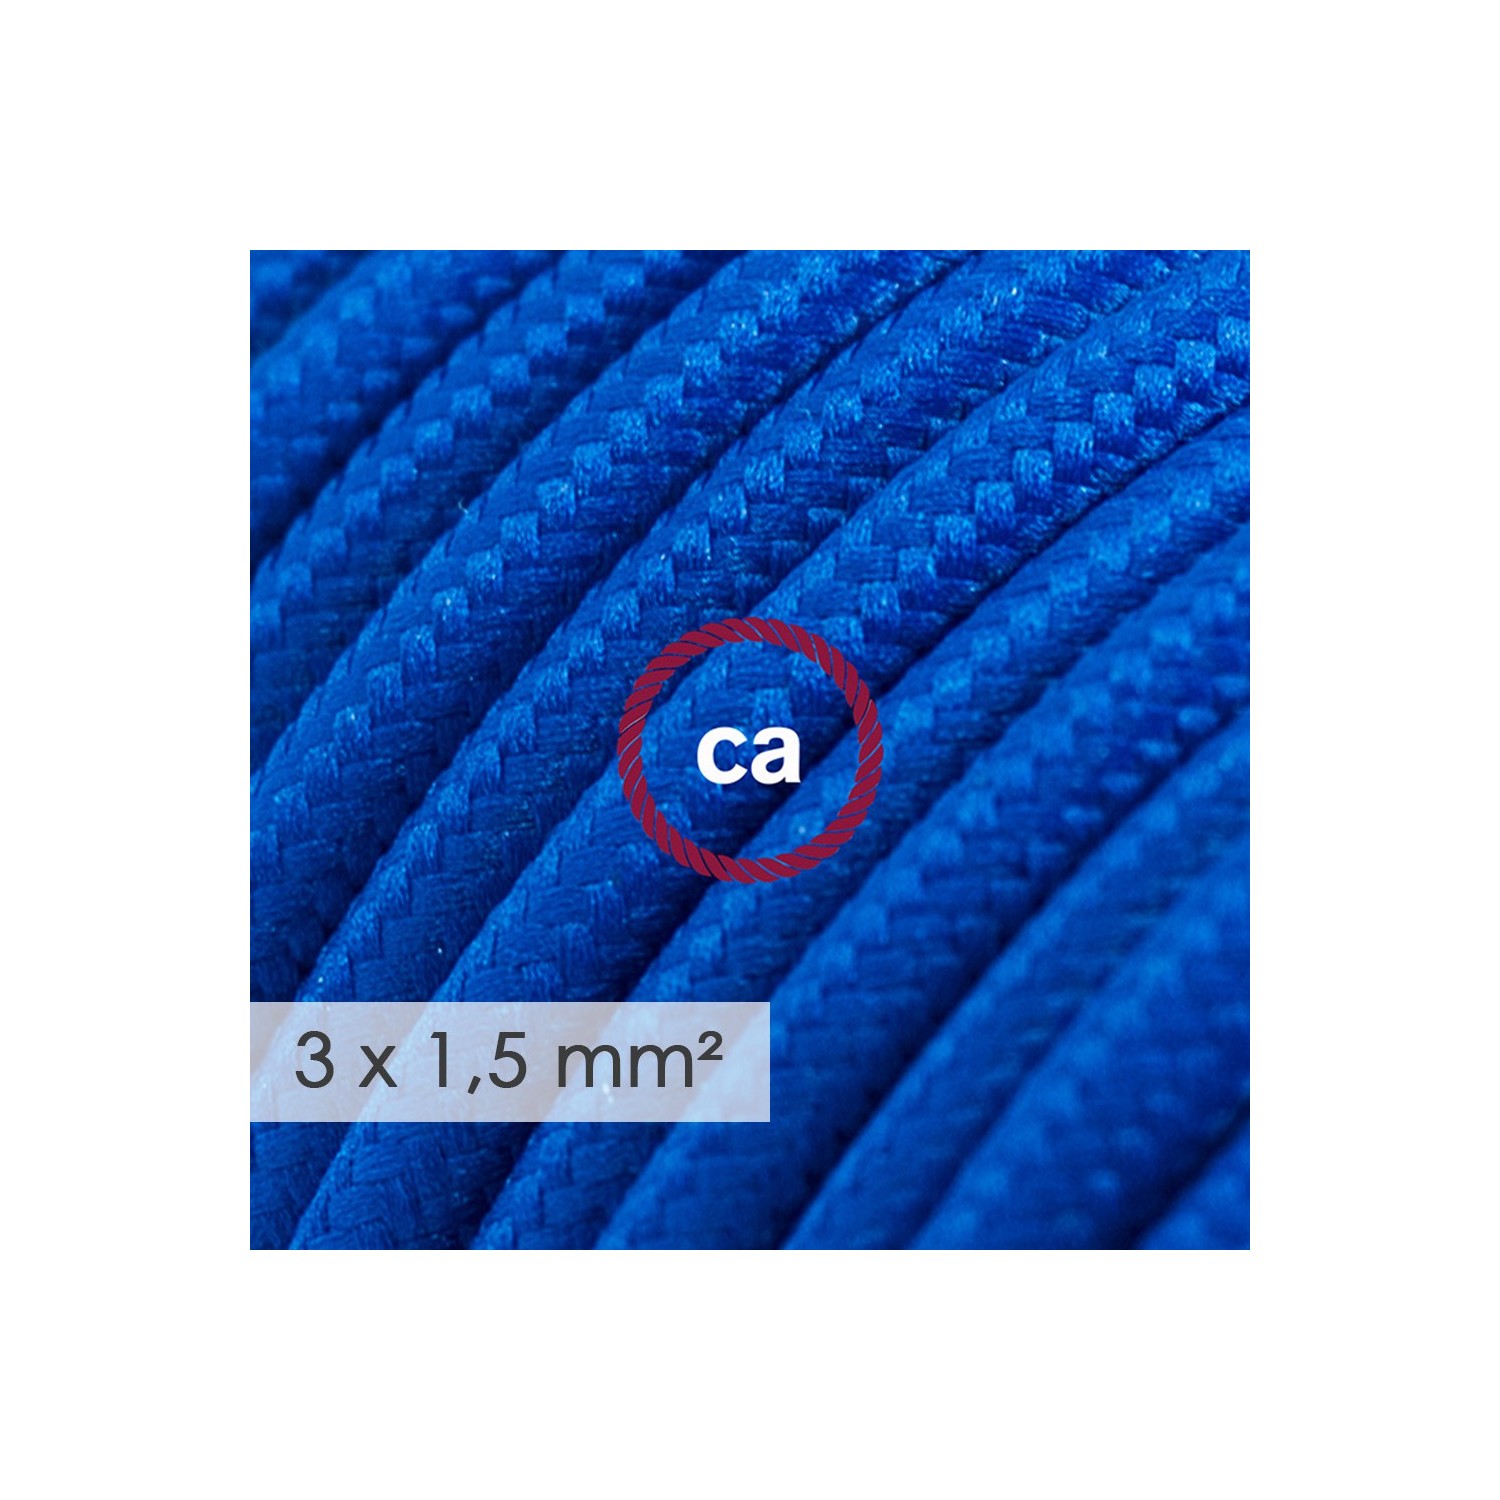 Stekkerdoos met strijkijzersnoer van blauwe viscose RM12 en randaarde stekker met comfortabele "ring" grip